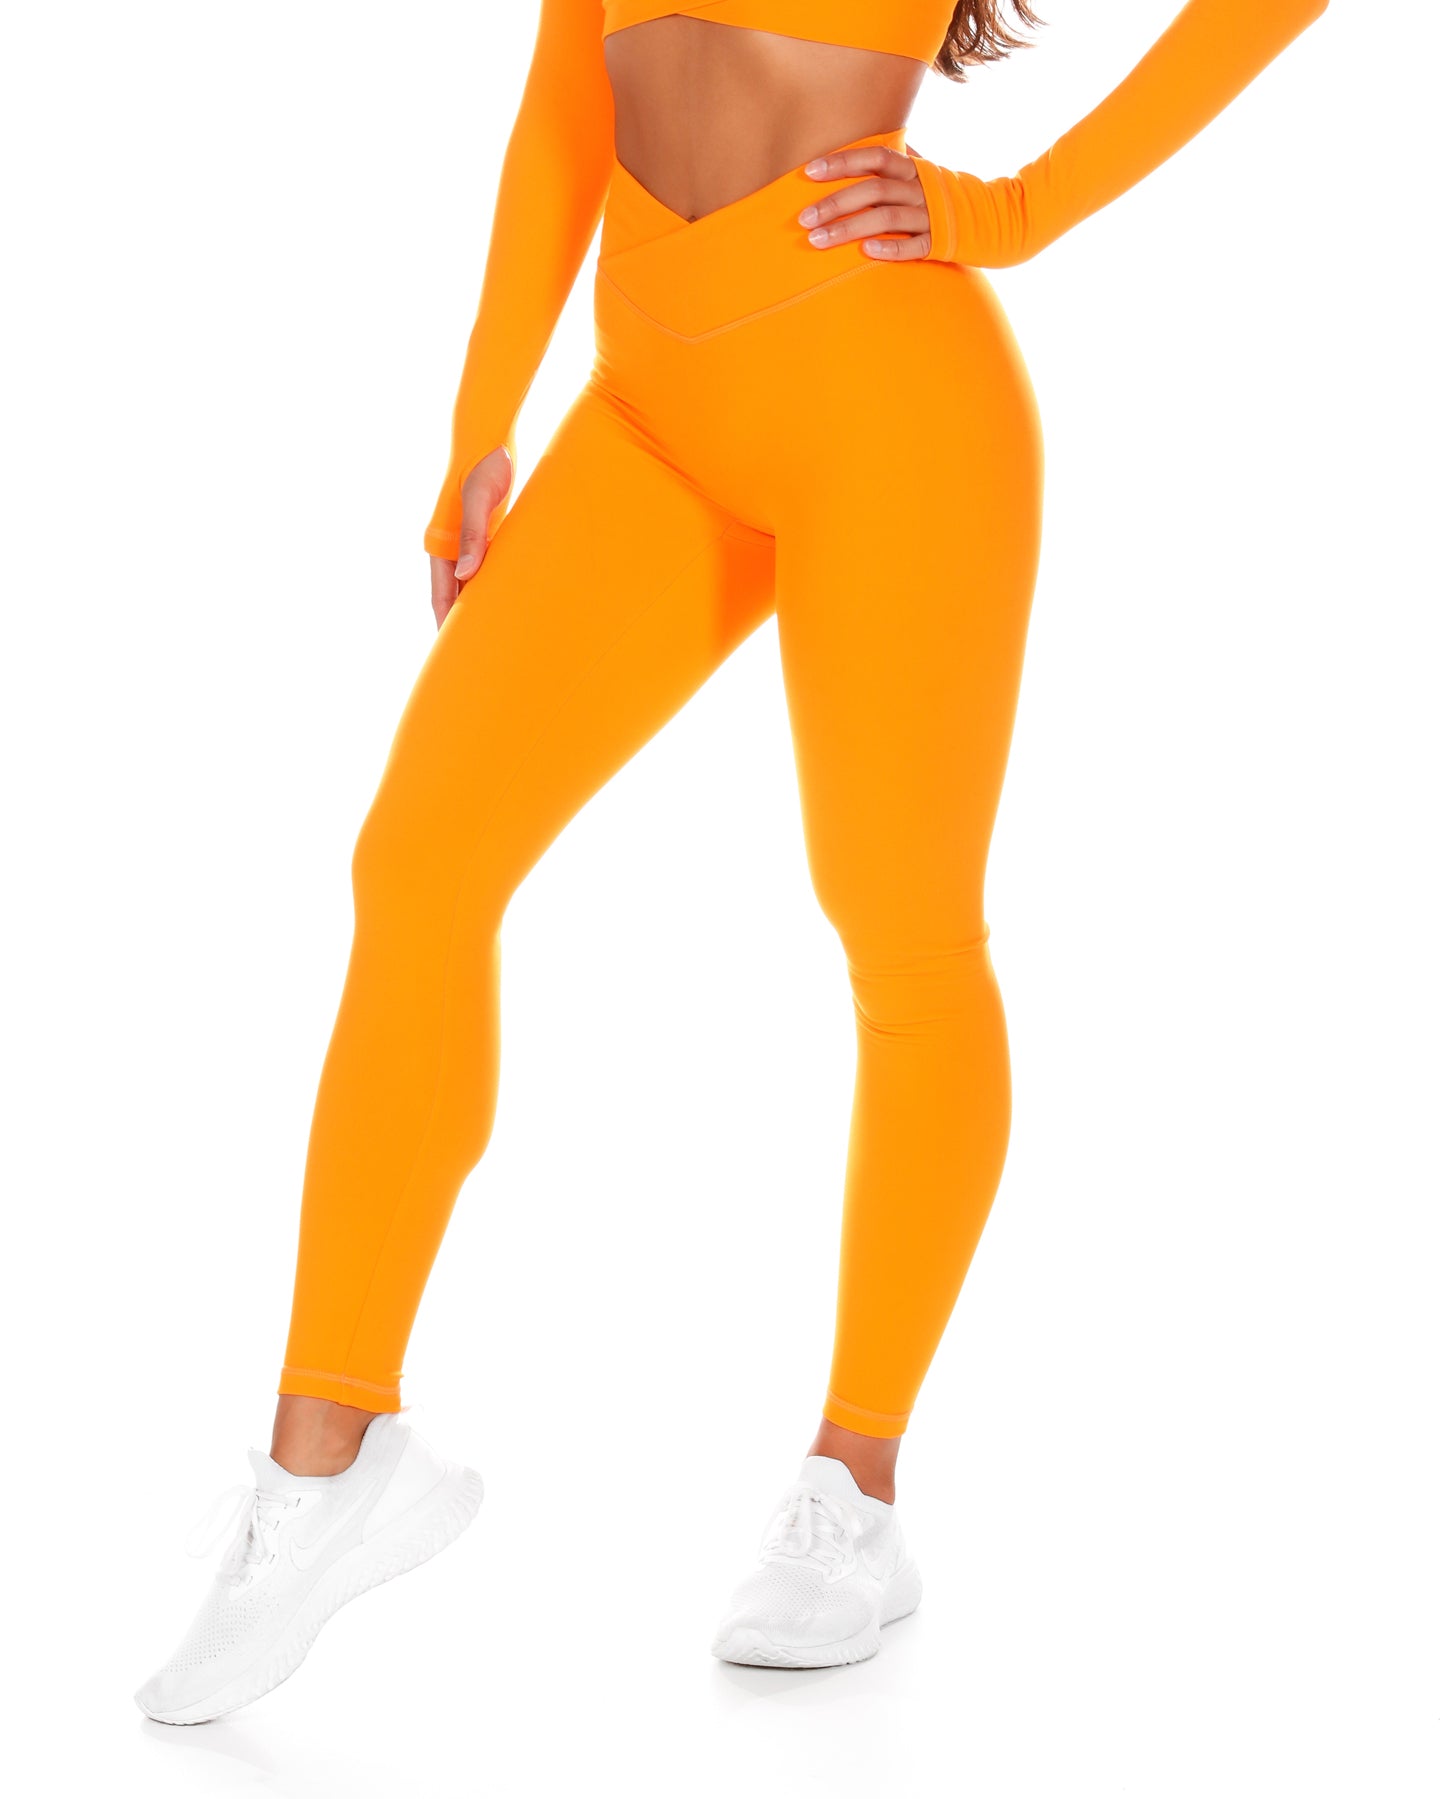 Orange Leggings: Shop up to −83%